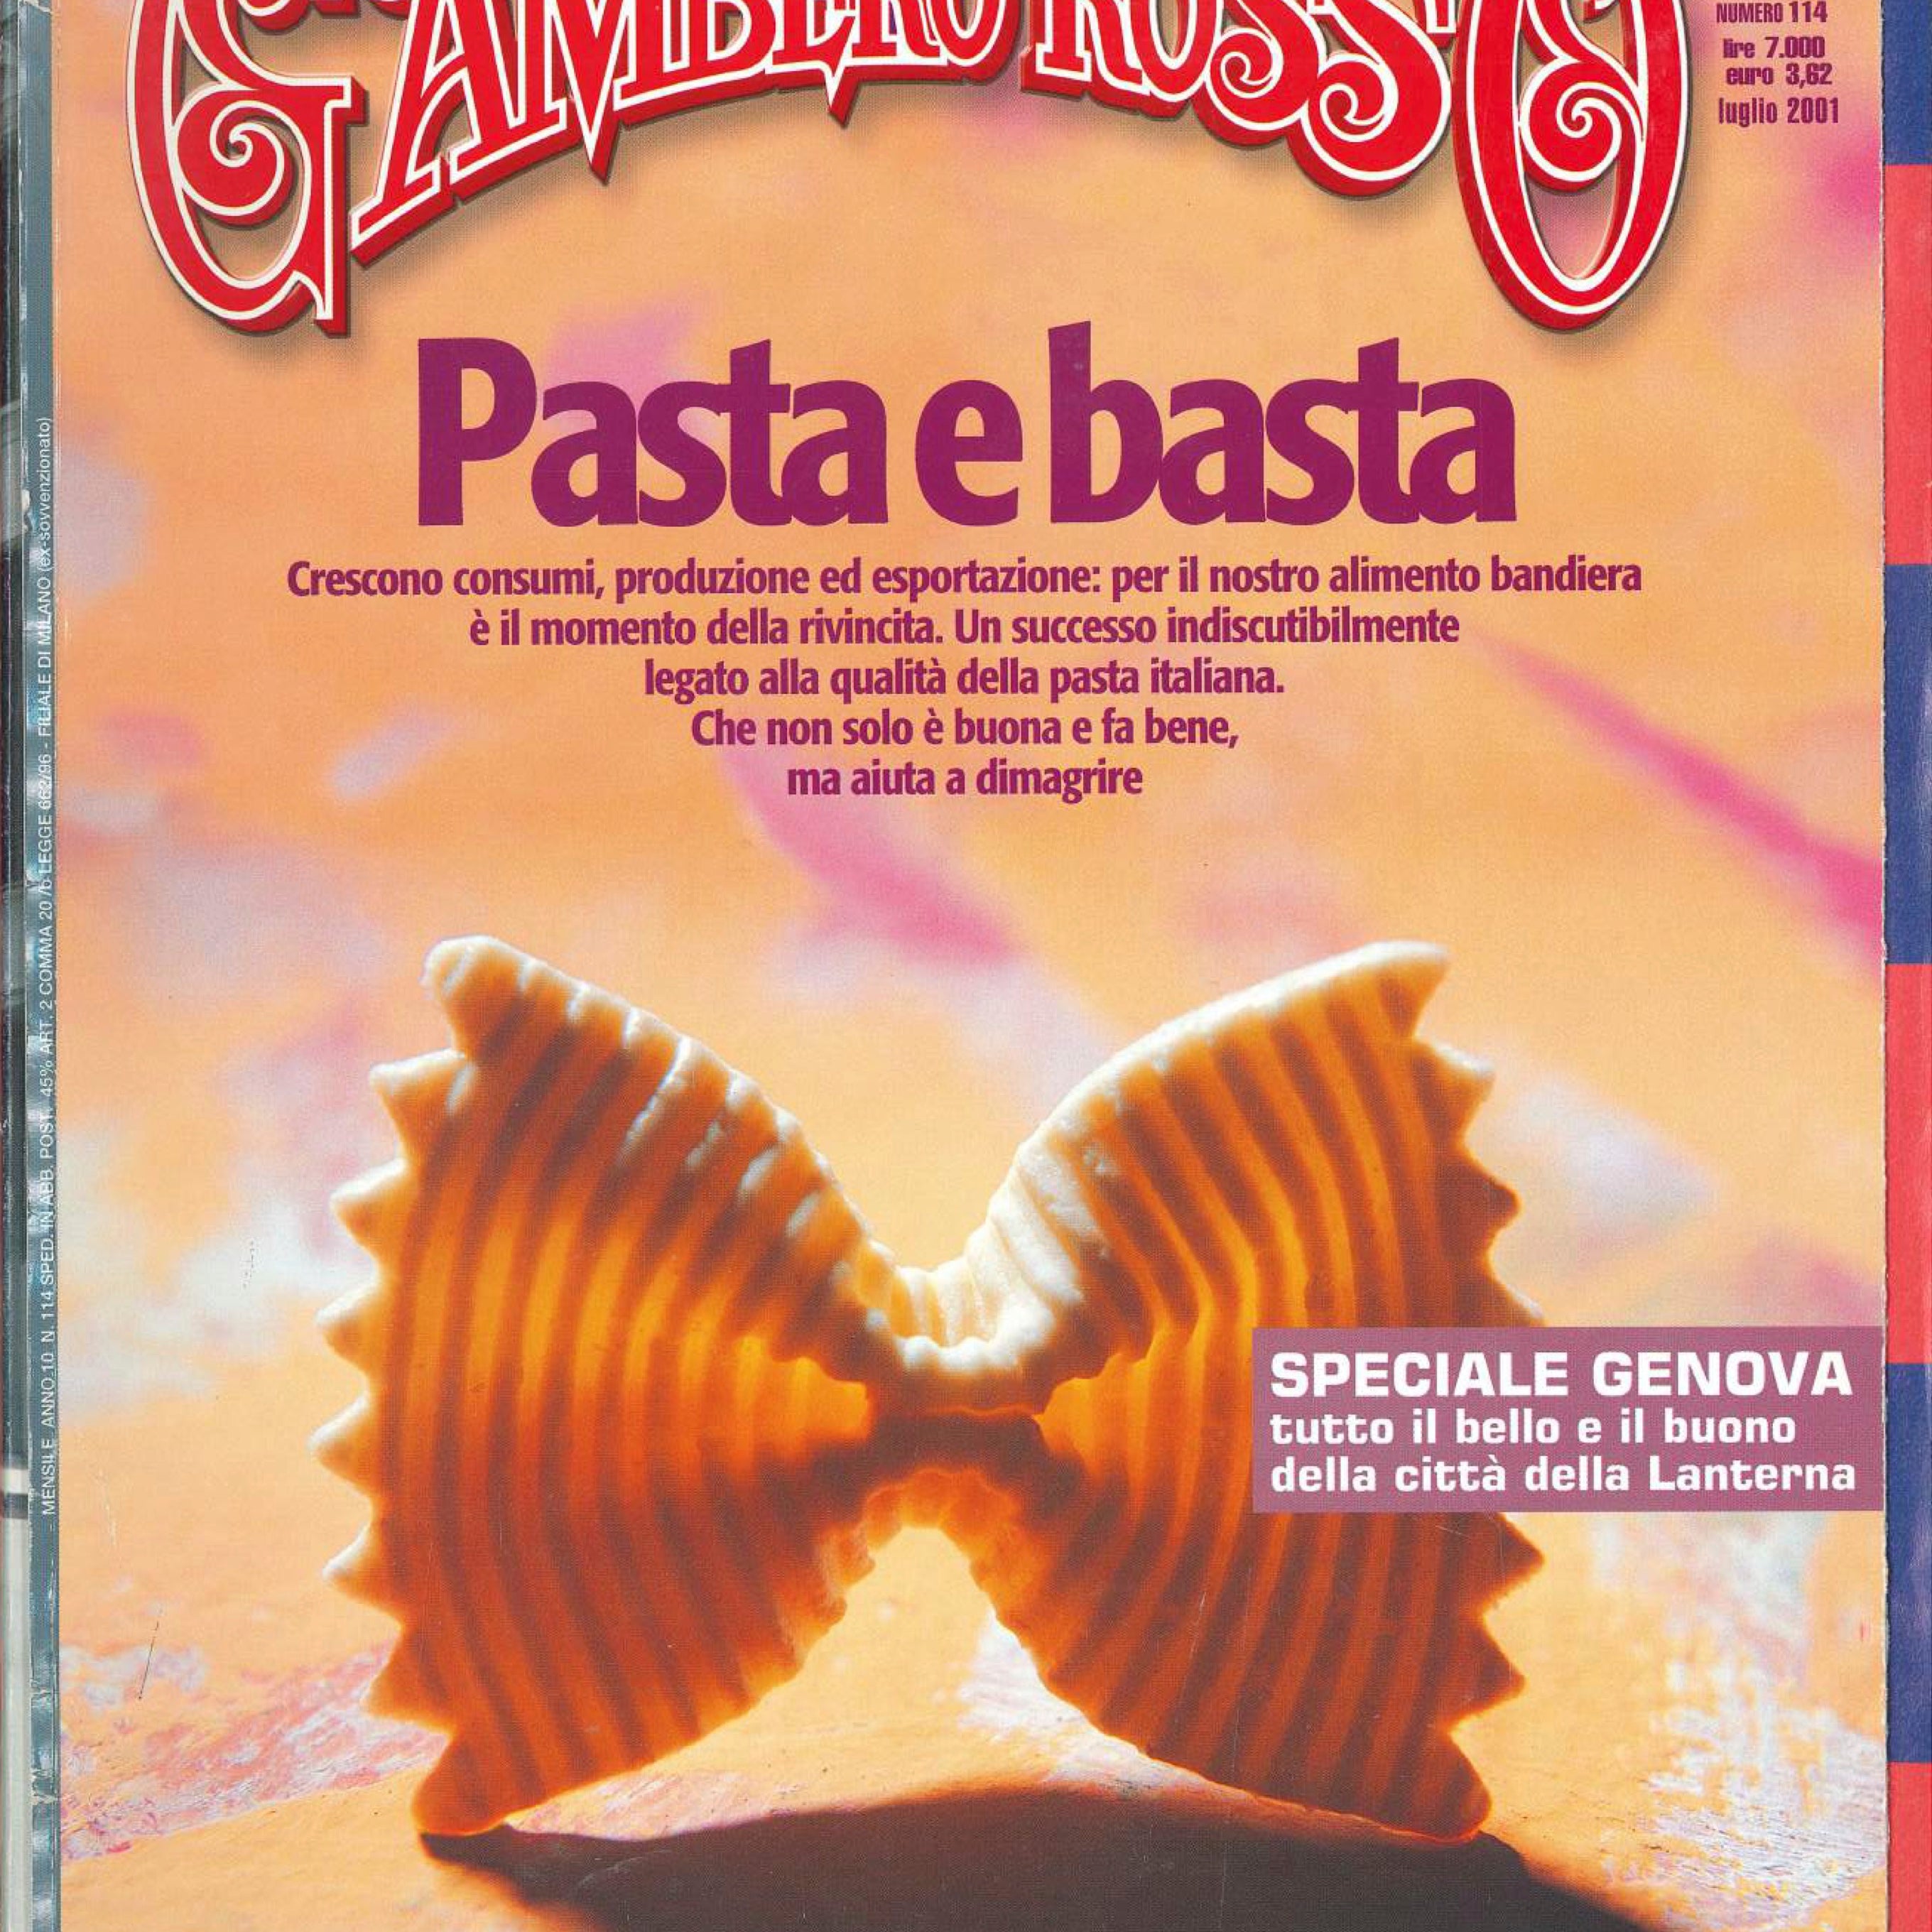 La rivista Gambero Rosso rende omaggio alla pasta Fabbri